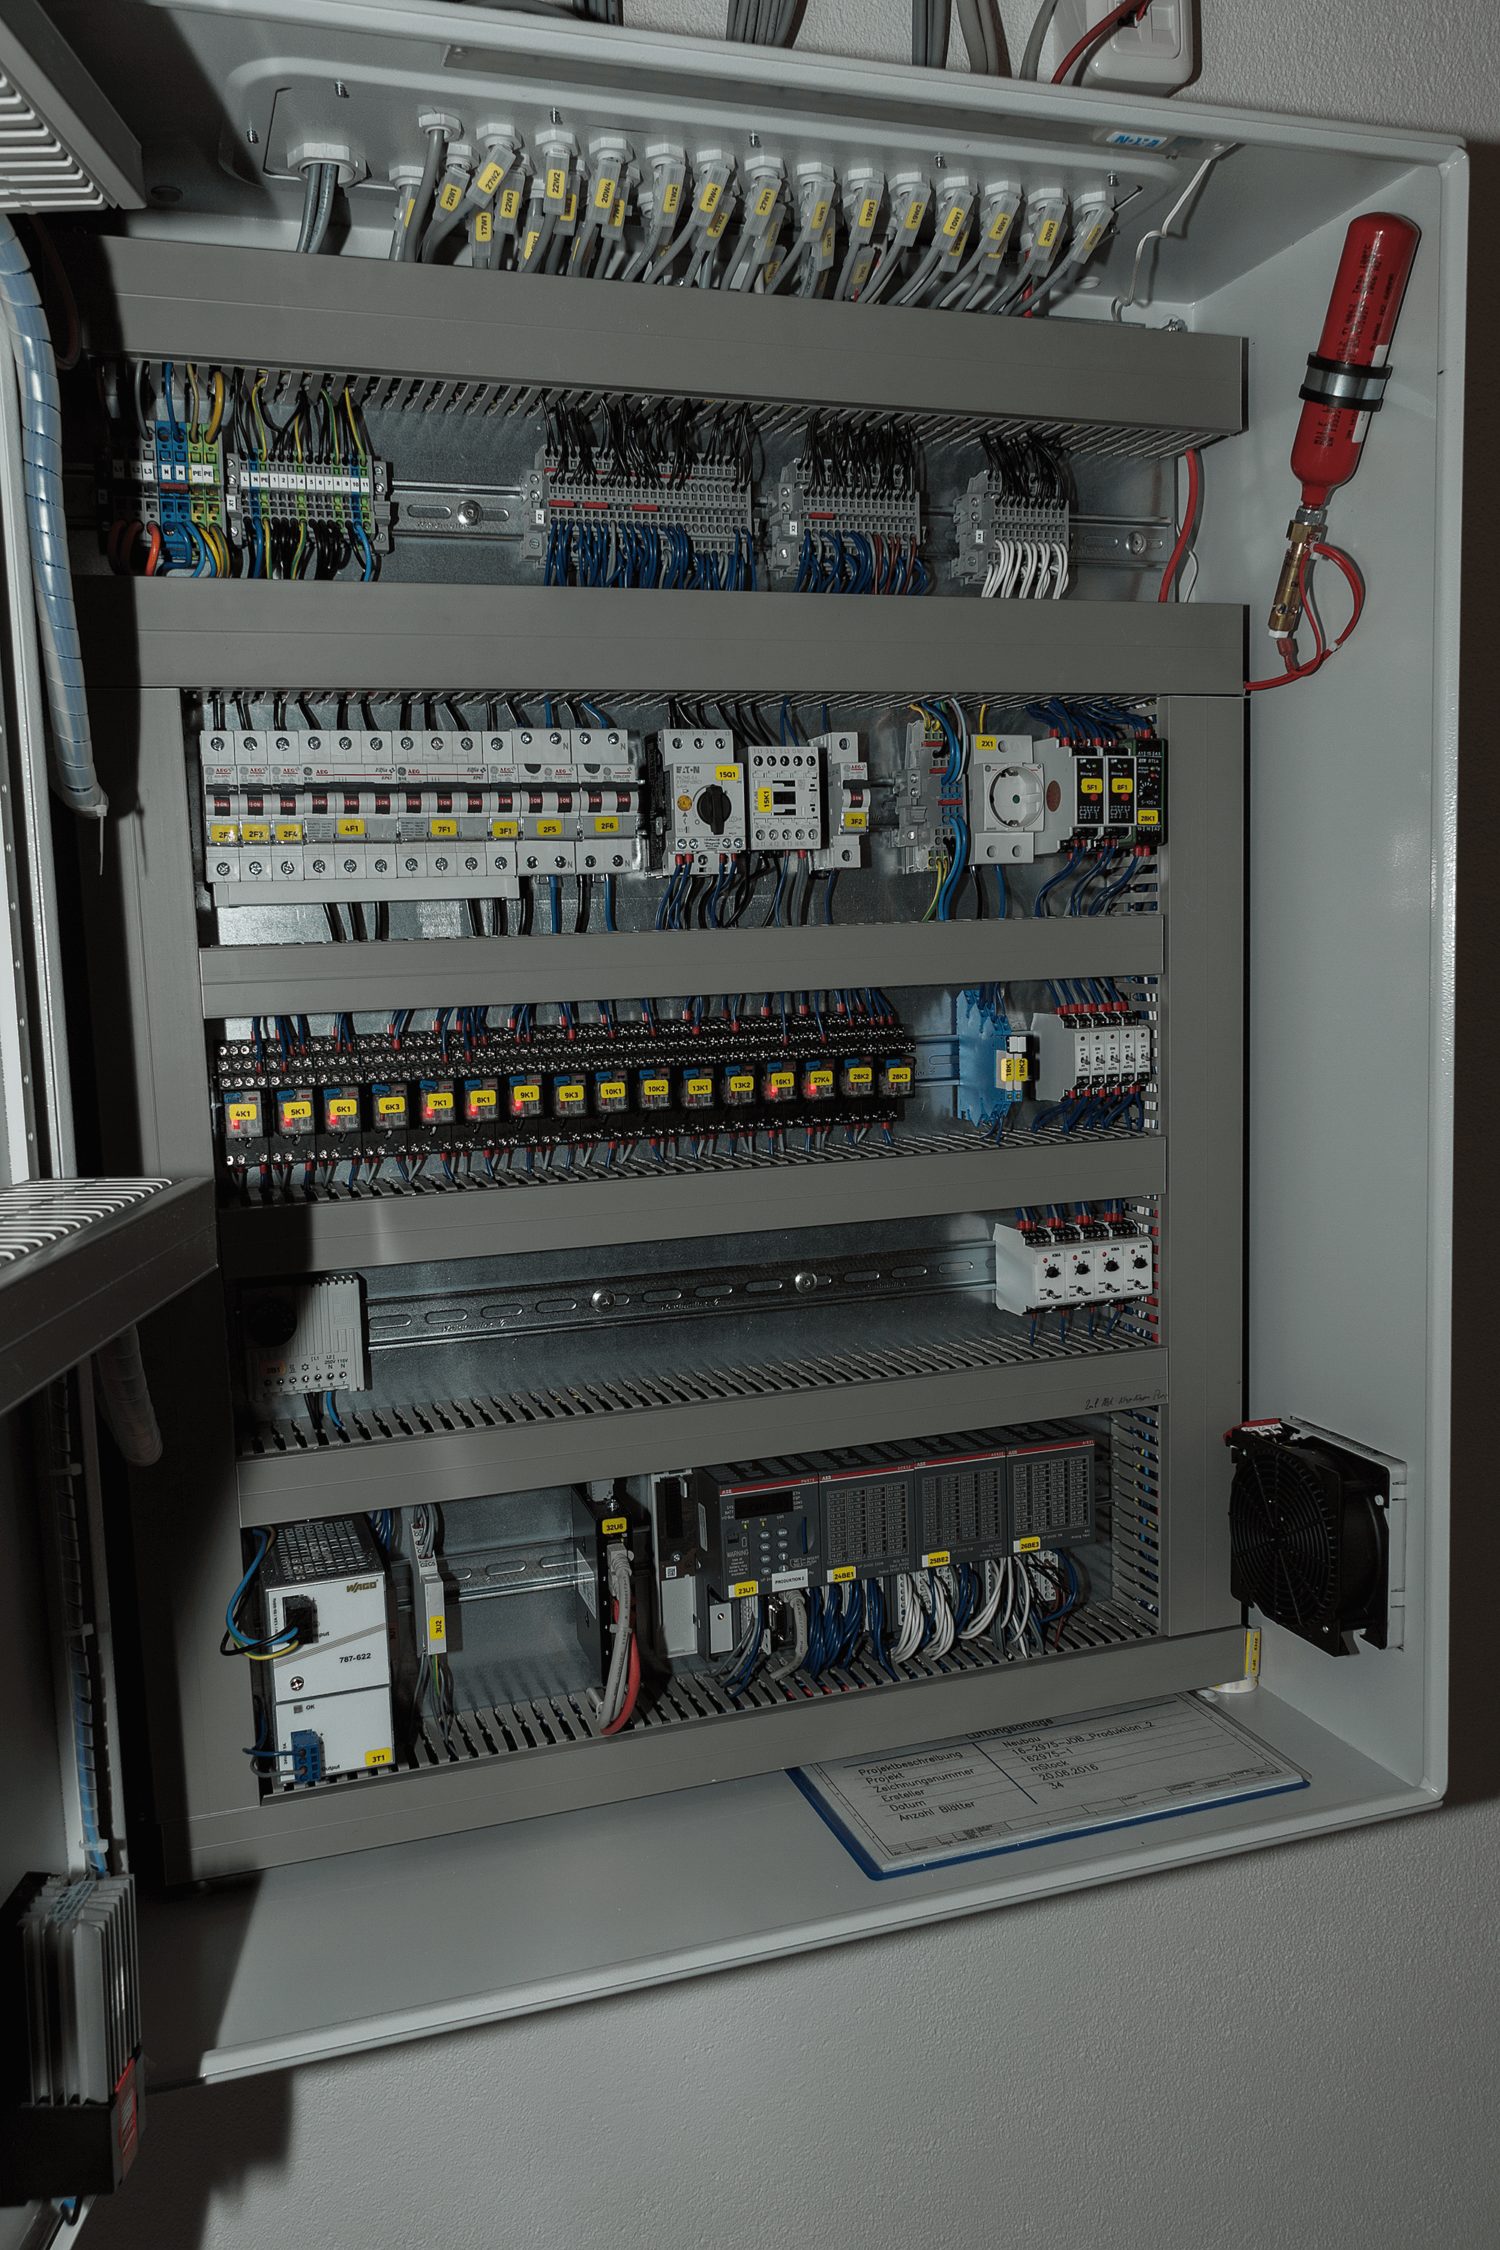 Sistem stingere incendiu instalatii electrice JOB, volum 0.96 m³